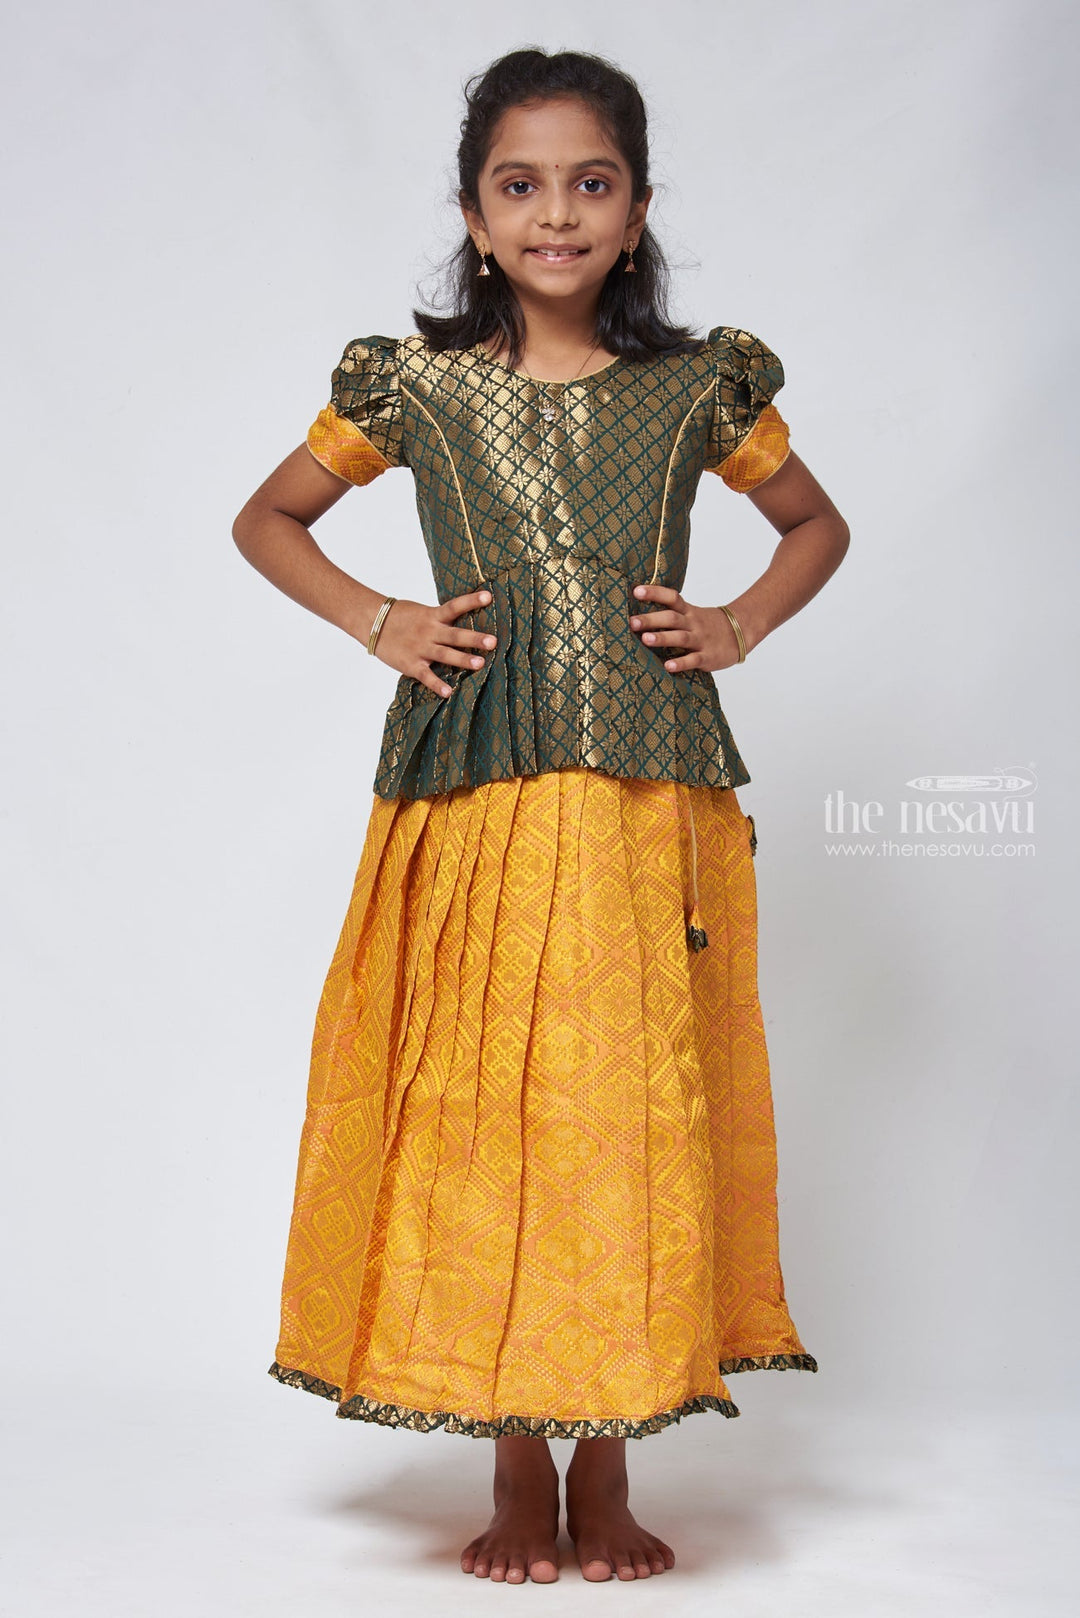 The Nesavu Pattu Pavadai Majestic Brocade Green Peplum Blouse paired with Patola Yellow Pattu Pavadai: Timeless South Indian Fashion Nesavu 14 (6M) / Yellow GPP306A-14 Pattu Pavadai with neck designs | Girls traditional silk dresses | The Nesavu